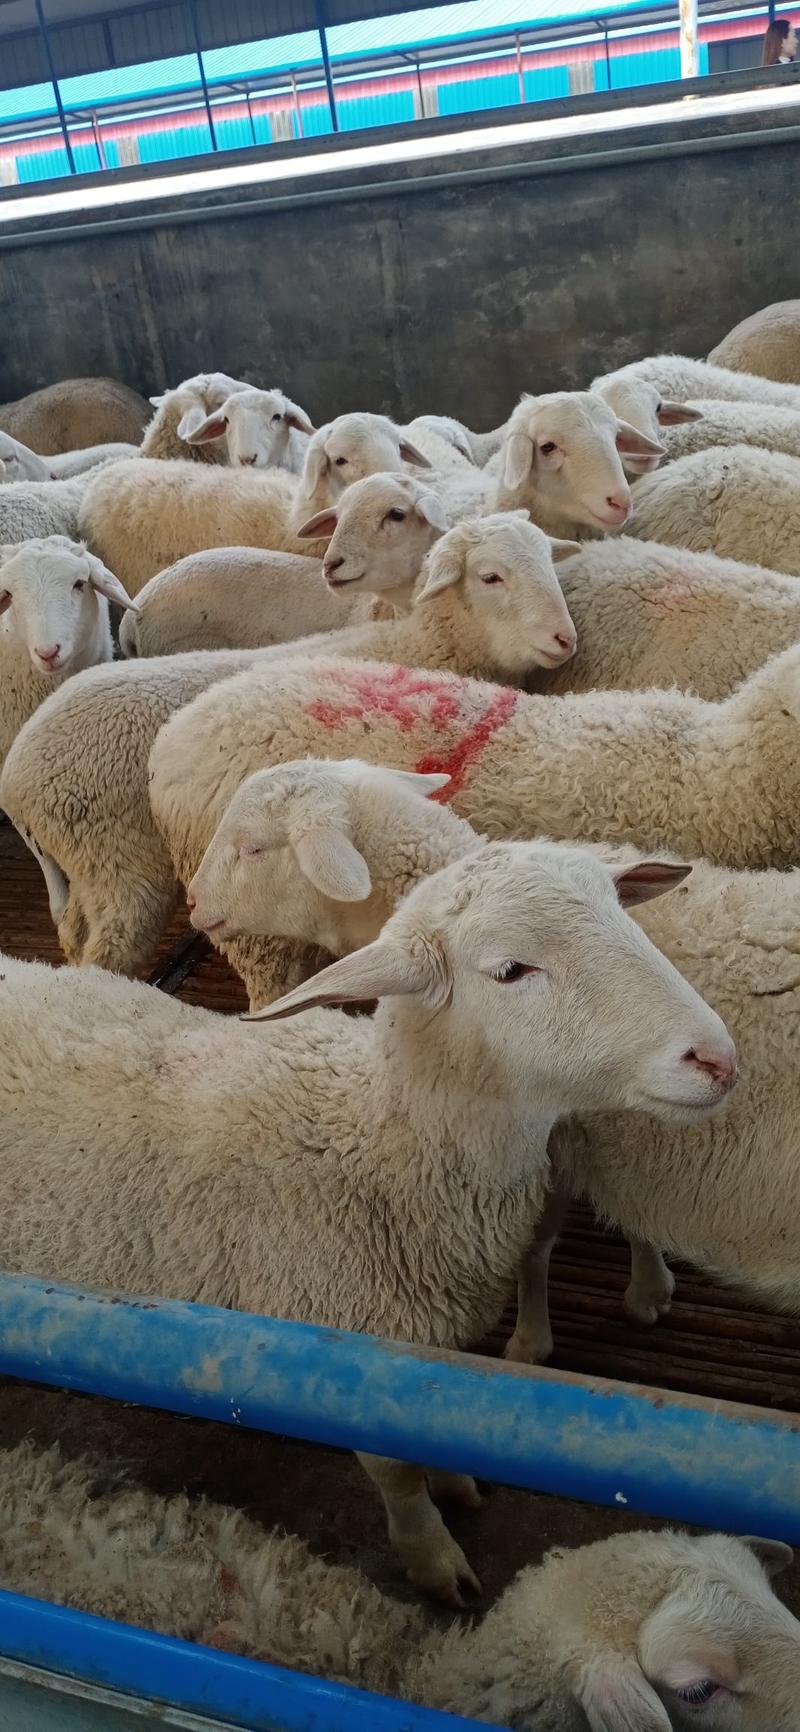 杜泊绵羊澳洲白羊小尾寒羊杜寒杂交羊现在价格多少